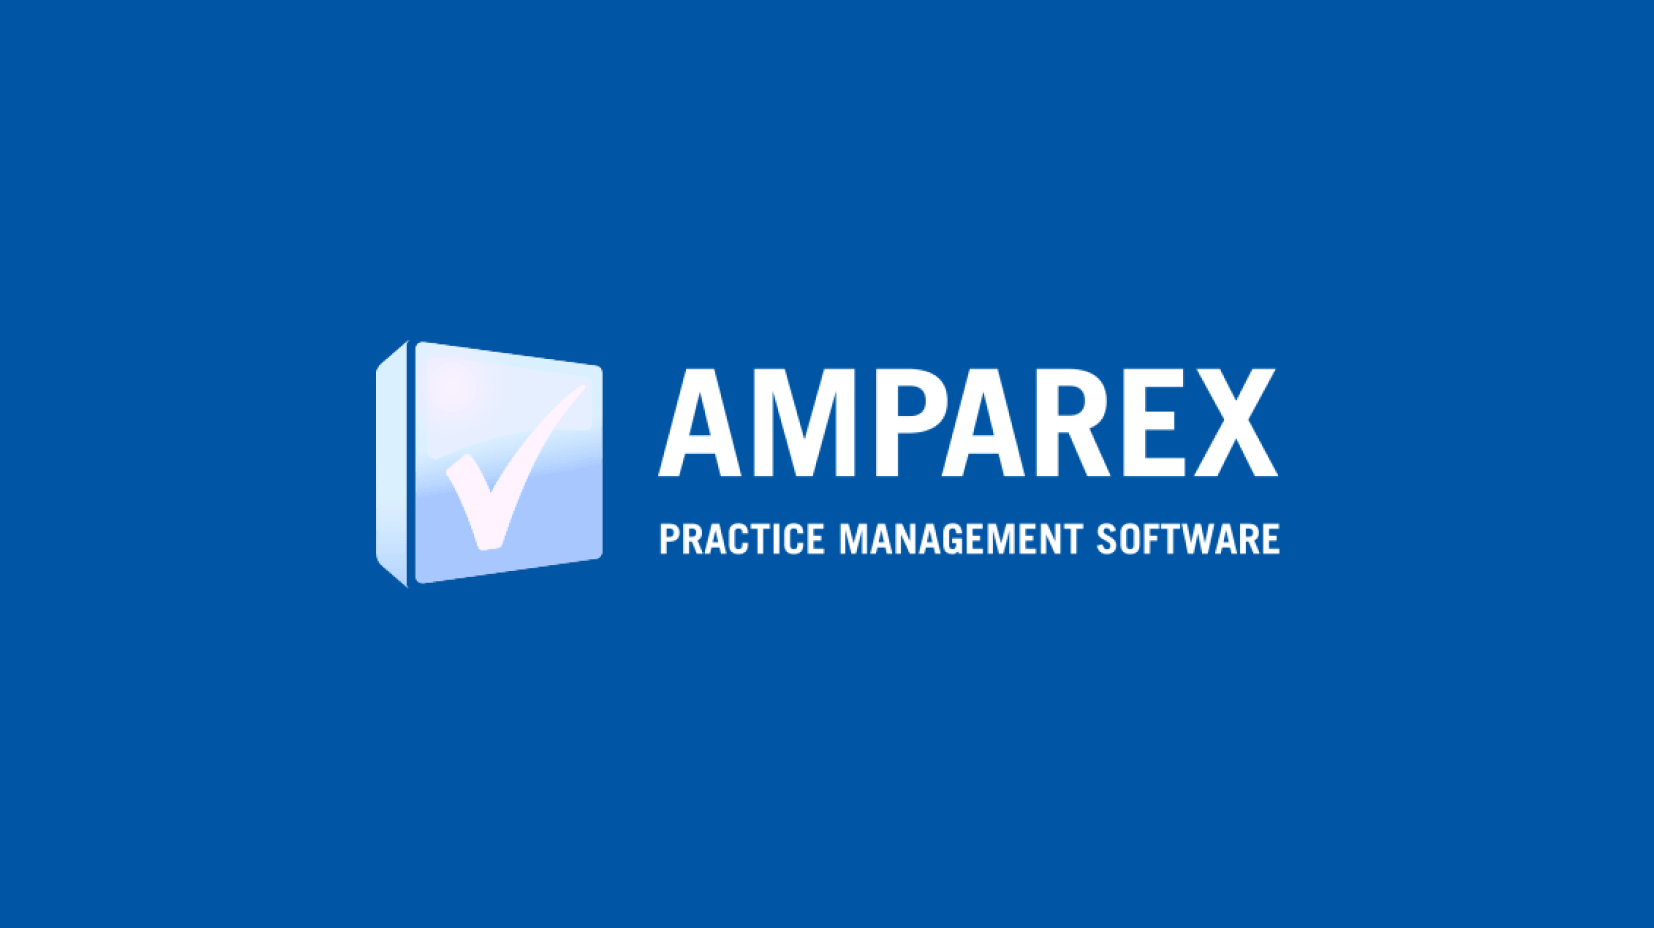 Tech & Product DD | Acquisition | Code & Co. advises FLEX Capital on AMPAREX